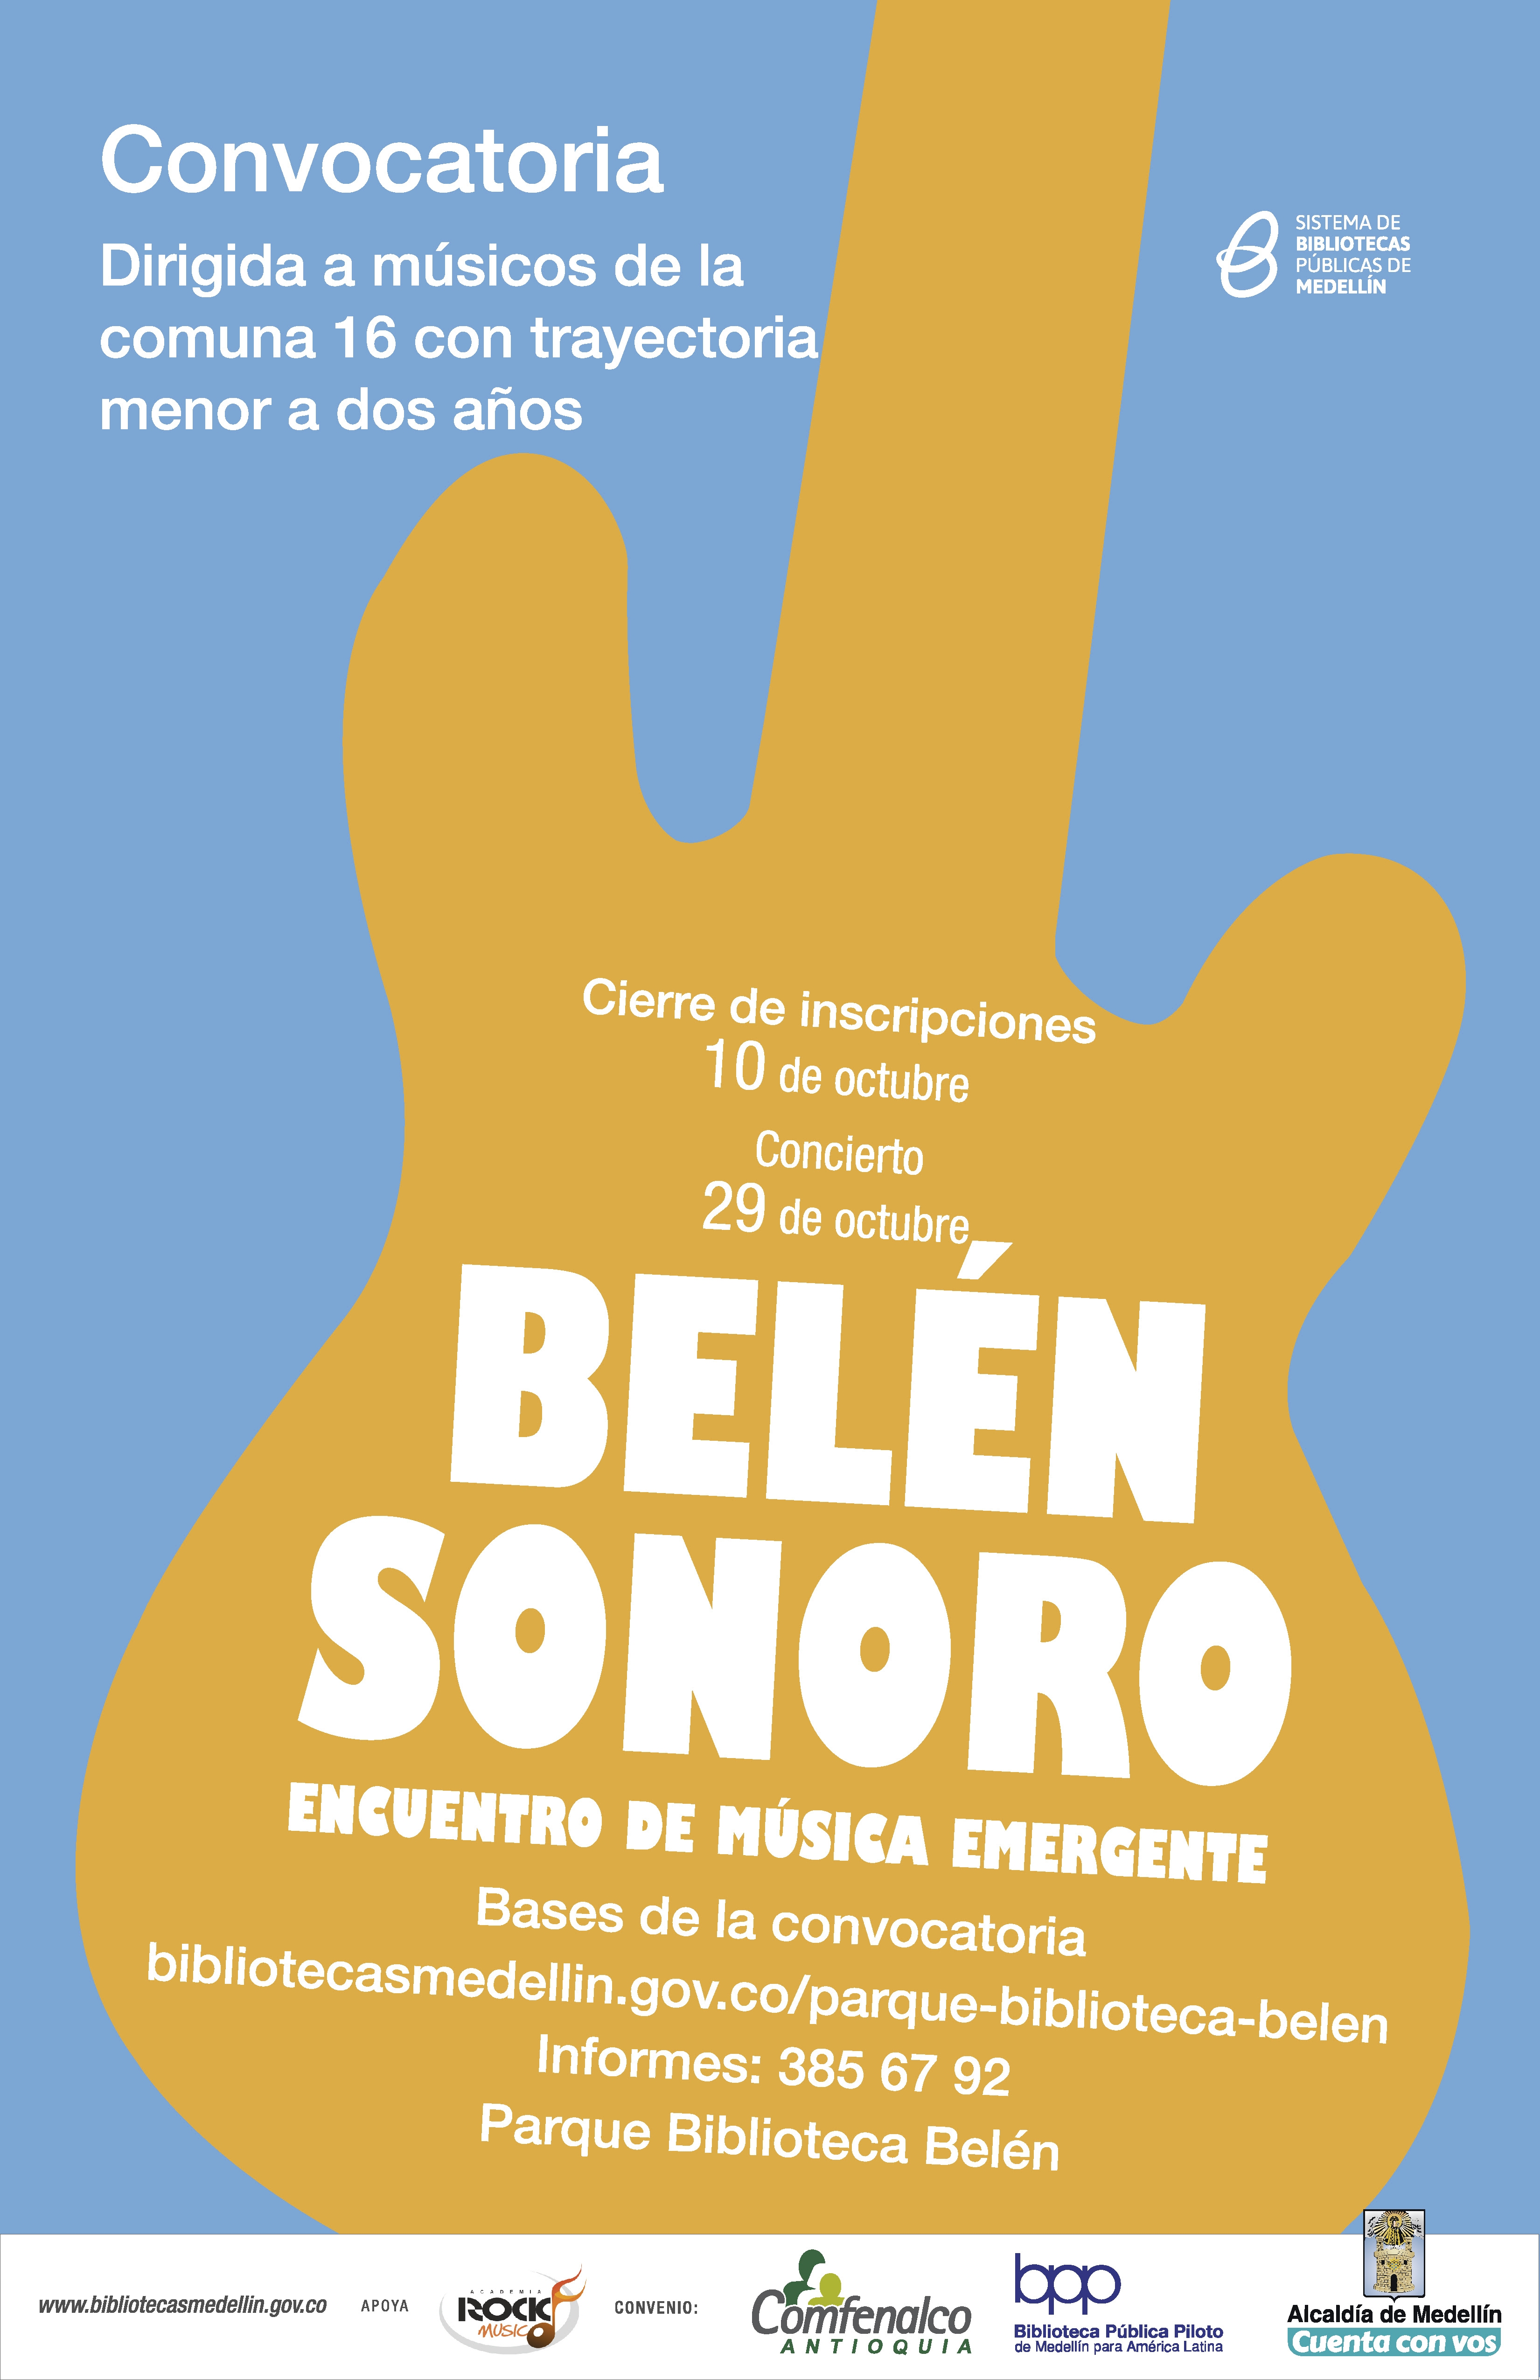 Convocatoria "Belén Sonoro"